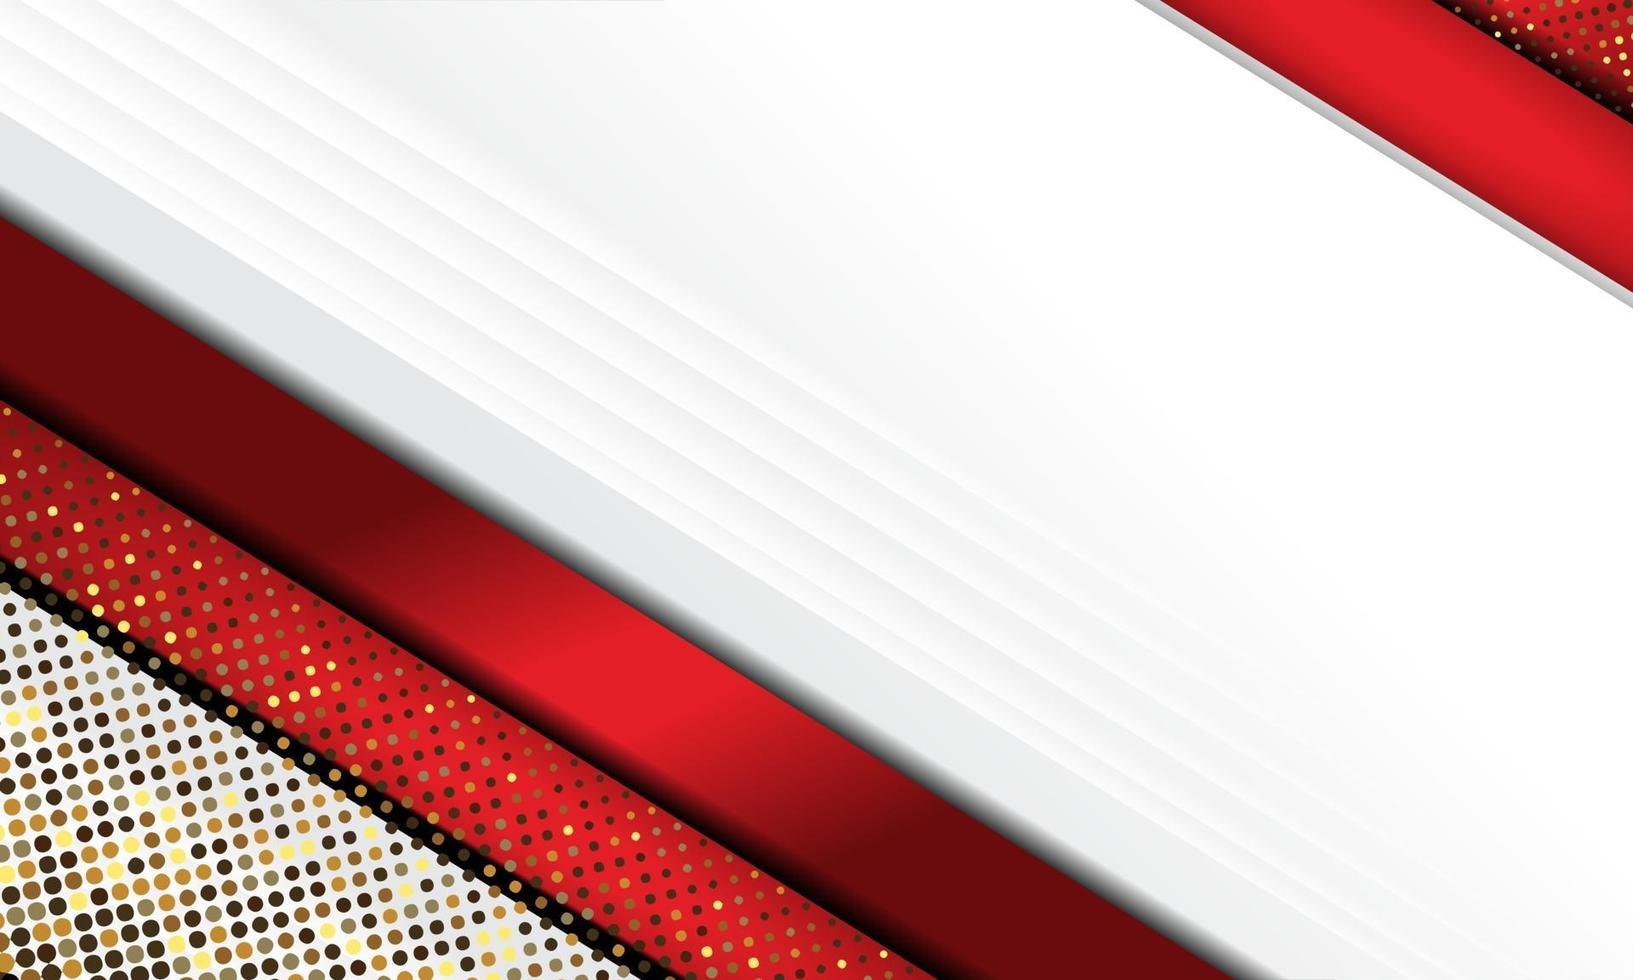 listras vermelhas e douradas do sumário do vetor moderno em fundo branco. modelo de design de vetor de design de conceito elegante para moldura, capa, banner, uso de cartão